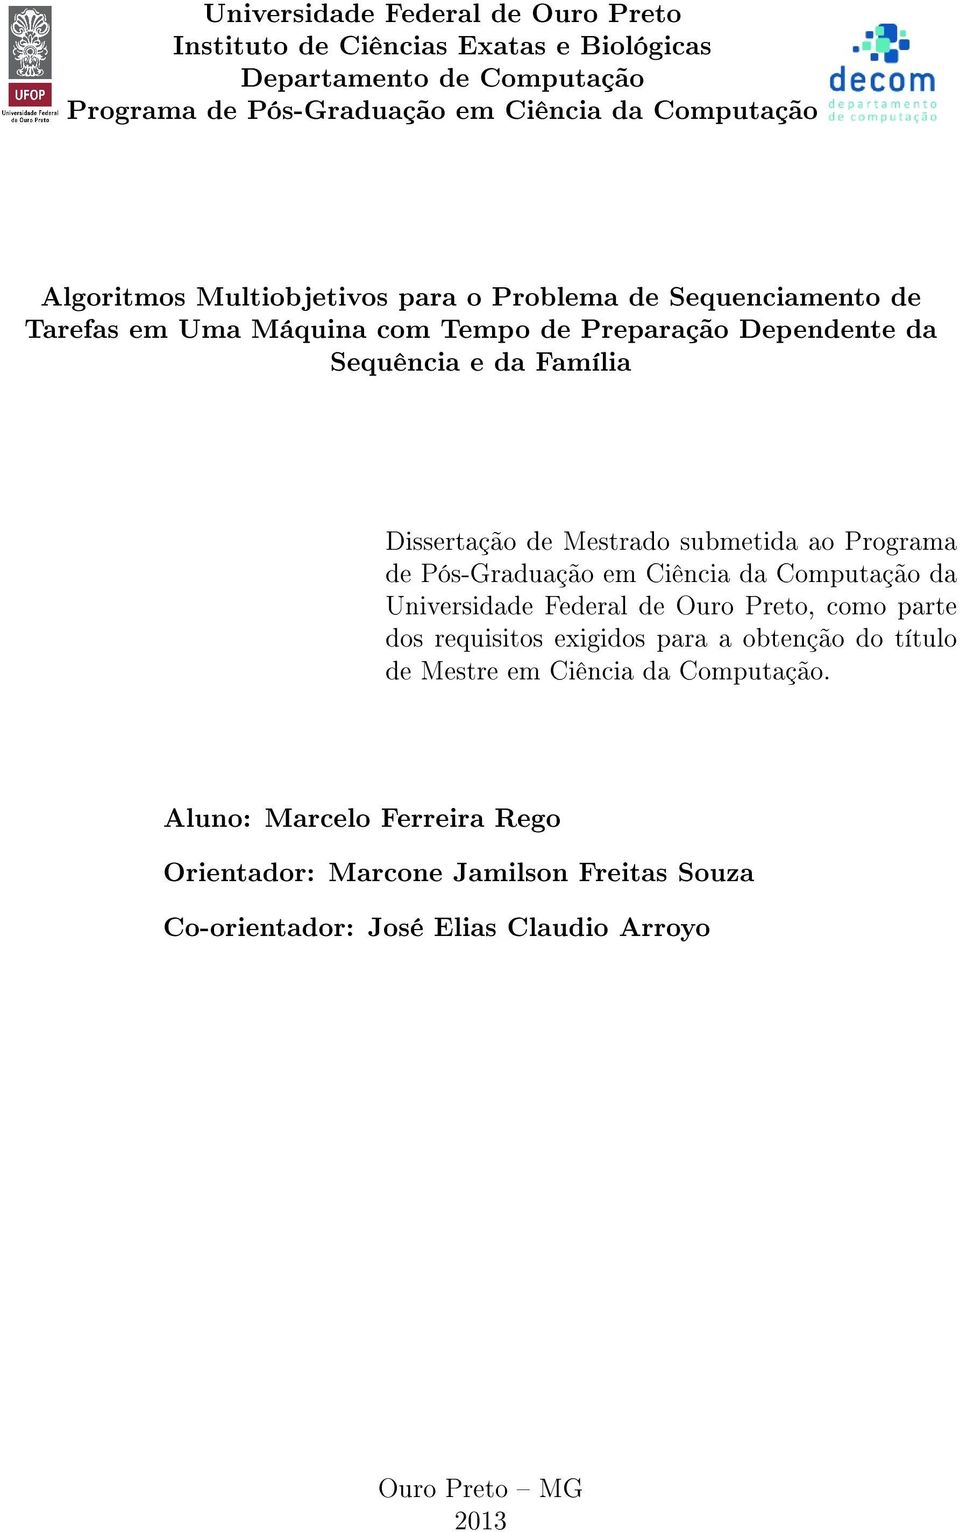 Mestrado submetida ao Programa de Pós-Graduação em Ciência da Computação da Universidade Federal de Ouro Preto, como parte dos requisitos exigidos para a obtenção